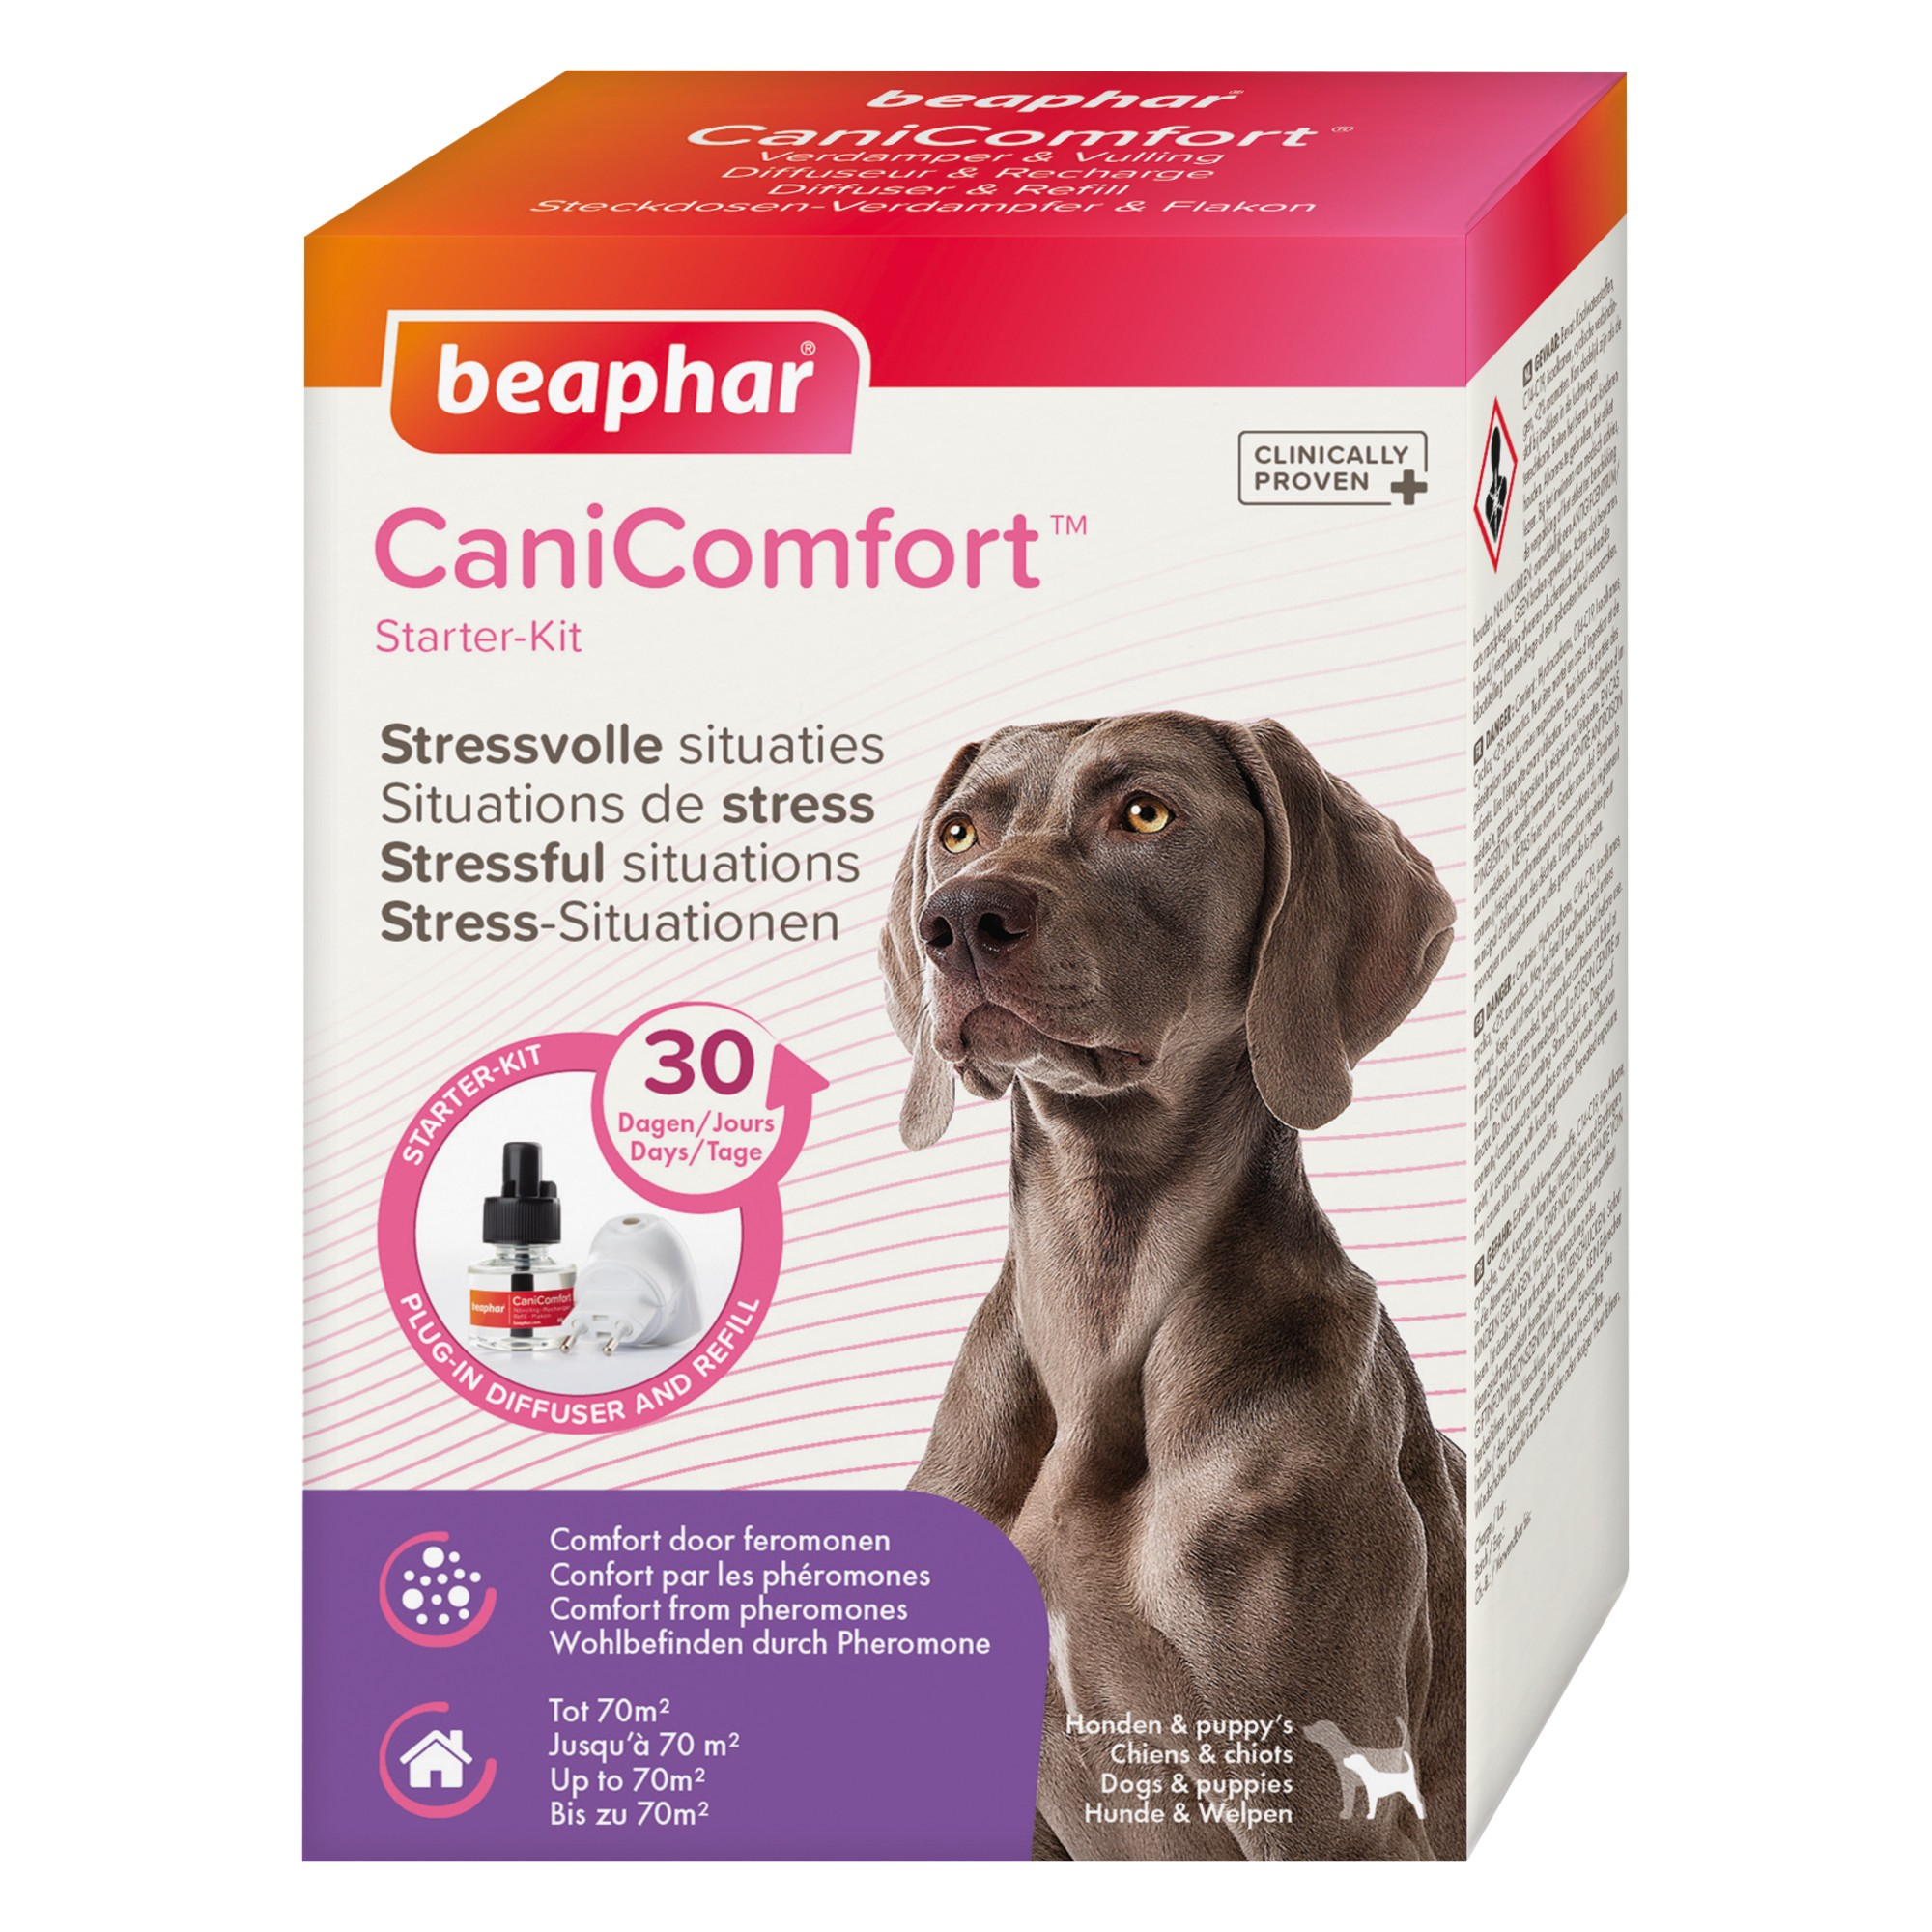 CaniComfort, diffuser met feromonen voor honden en puppy's